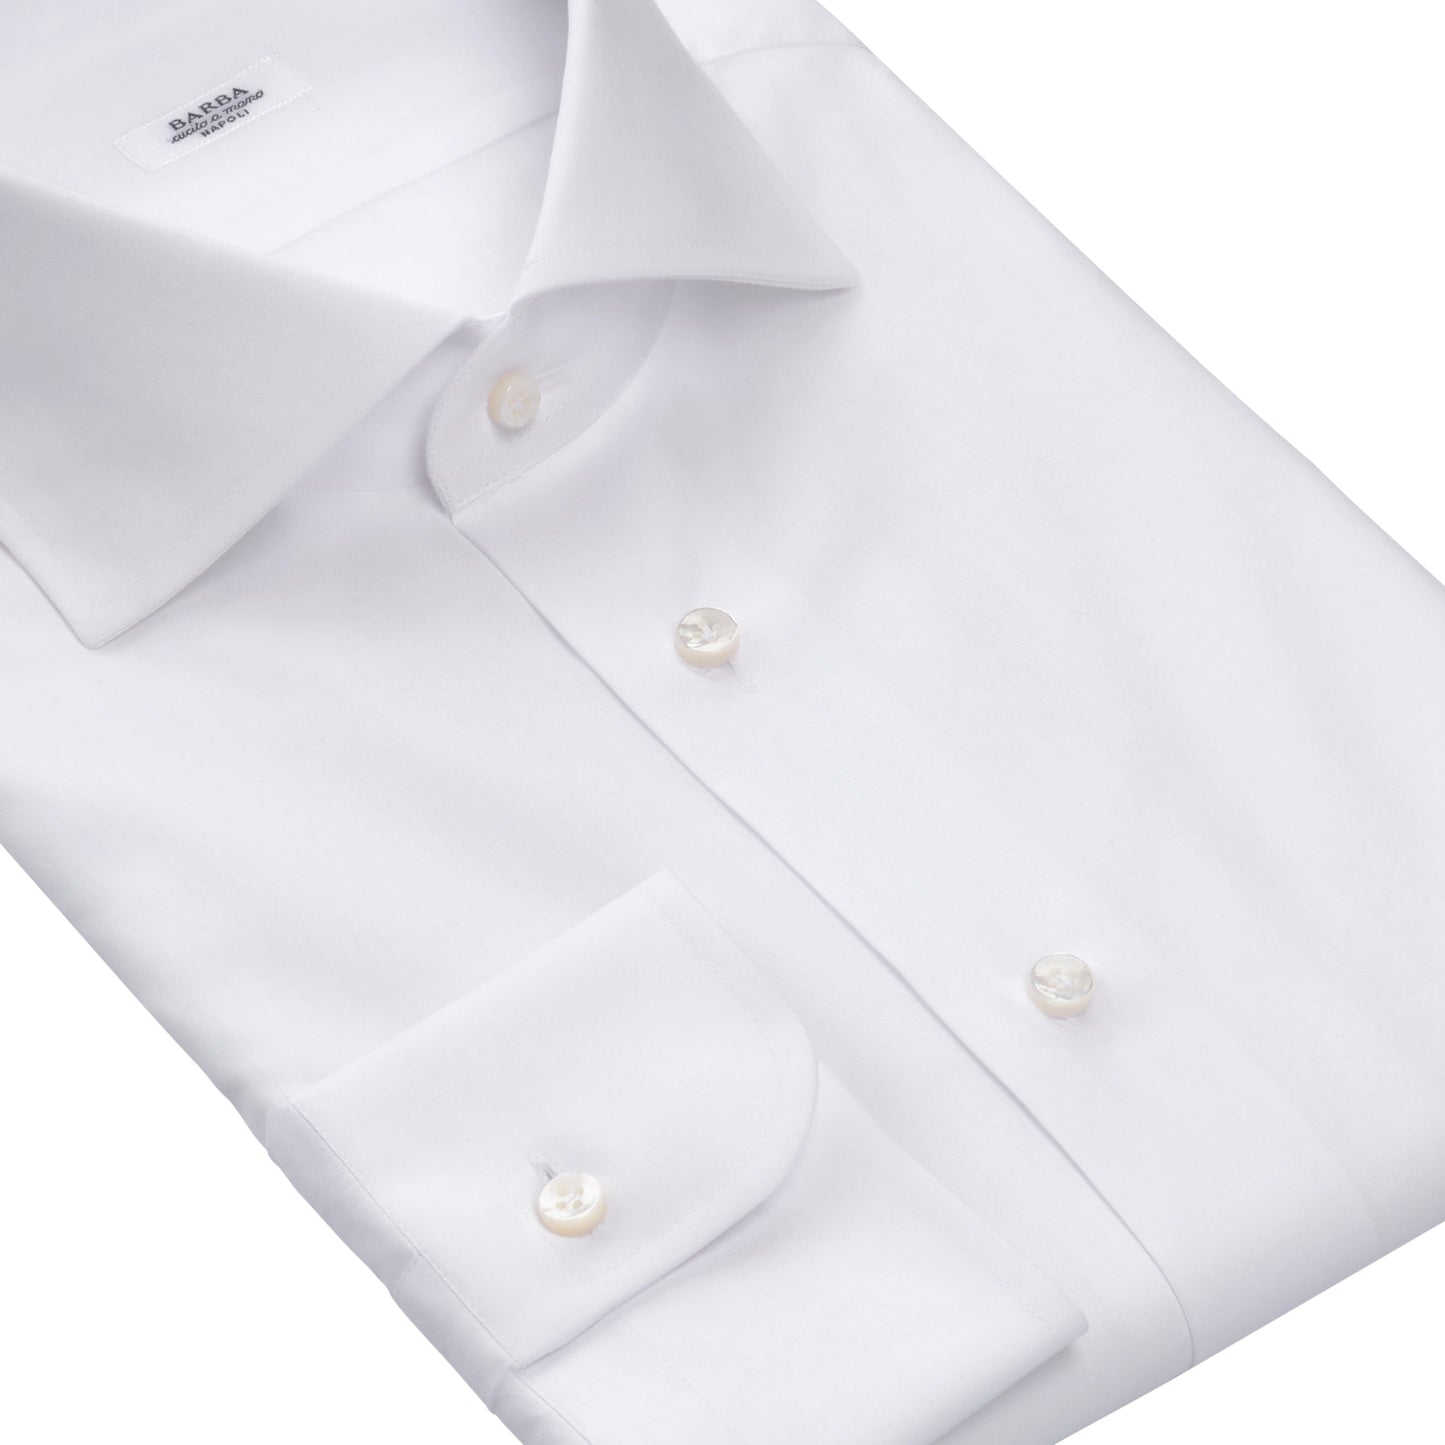 Barba Napoli Classic Cotton Shirt in White - SARTALE